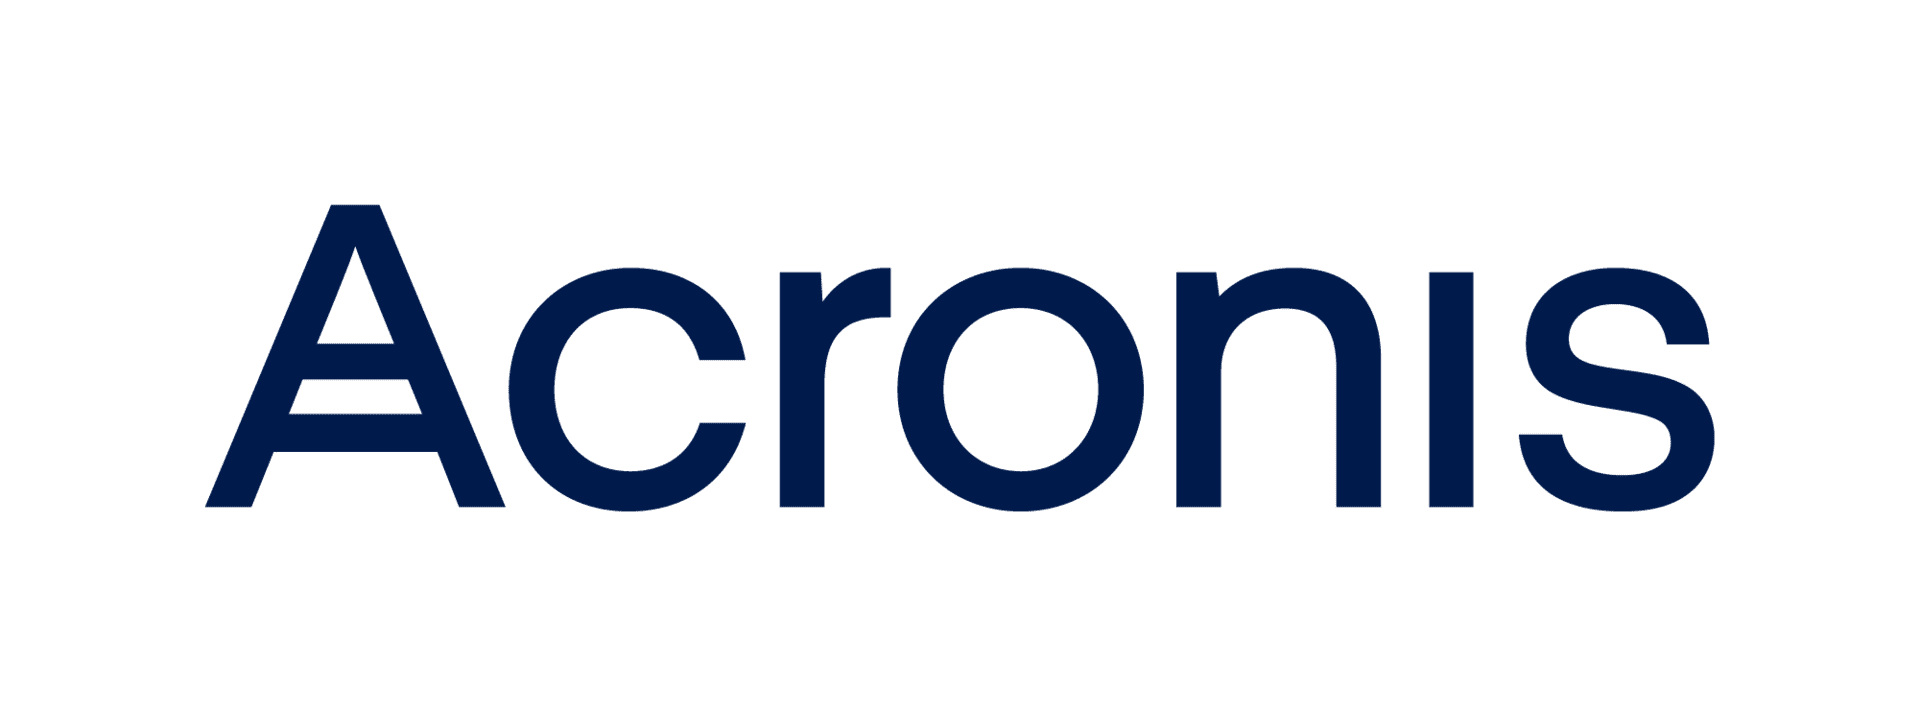 acronis logo large